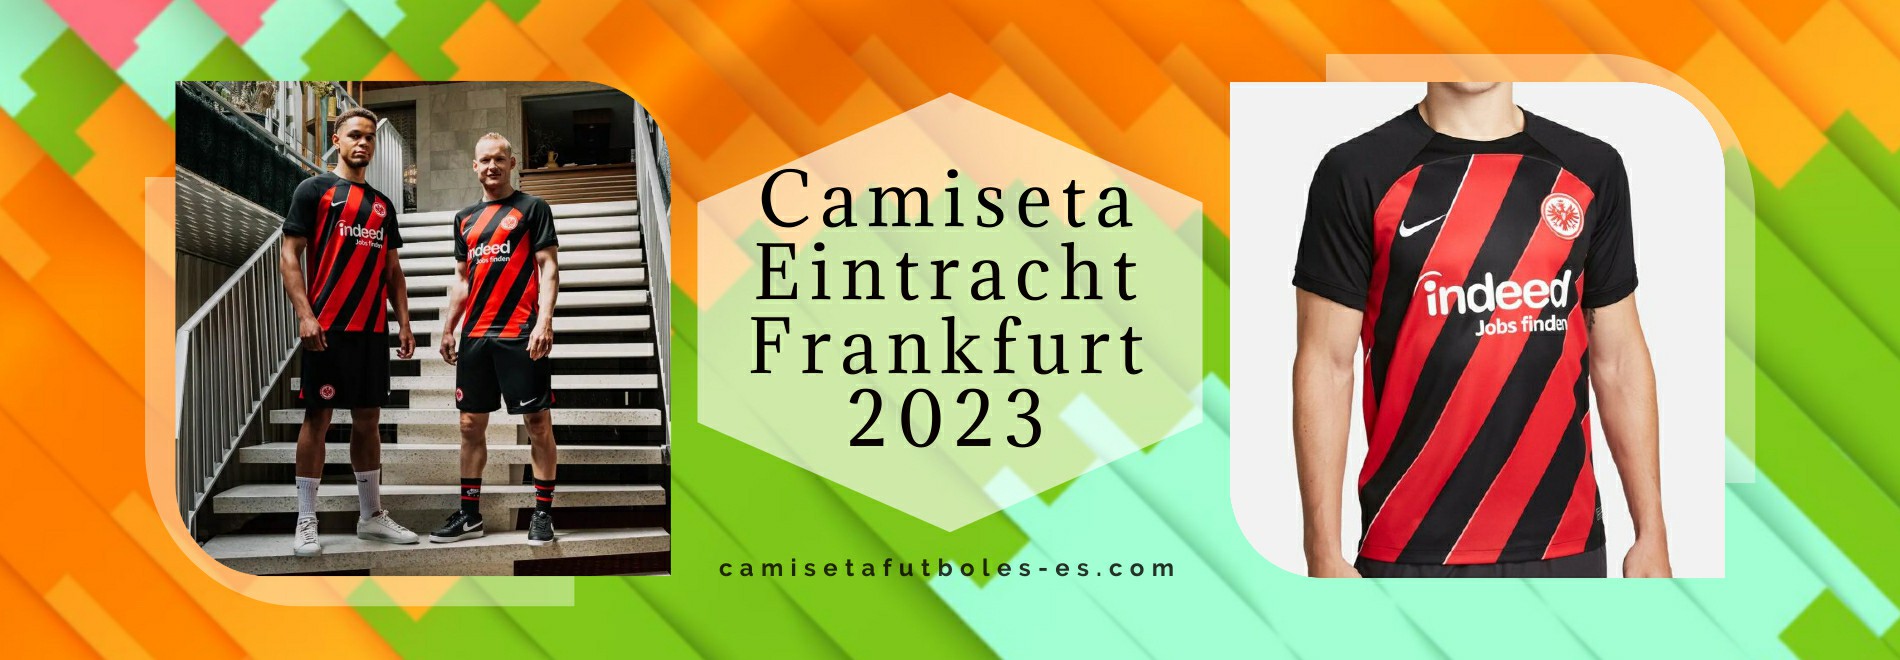 Camiseta Eintracht Frankfurt 2023-2024